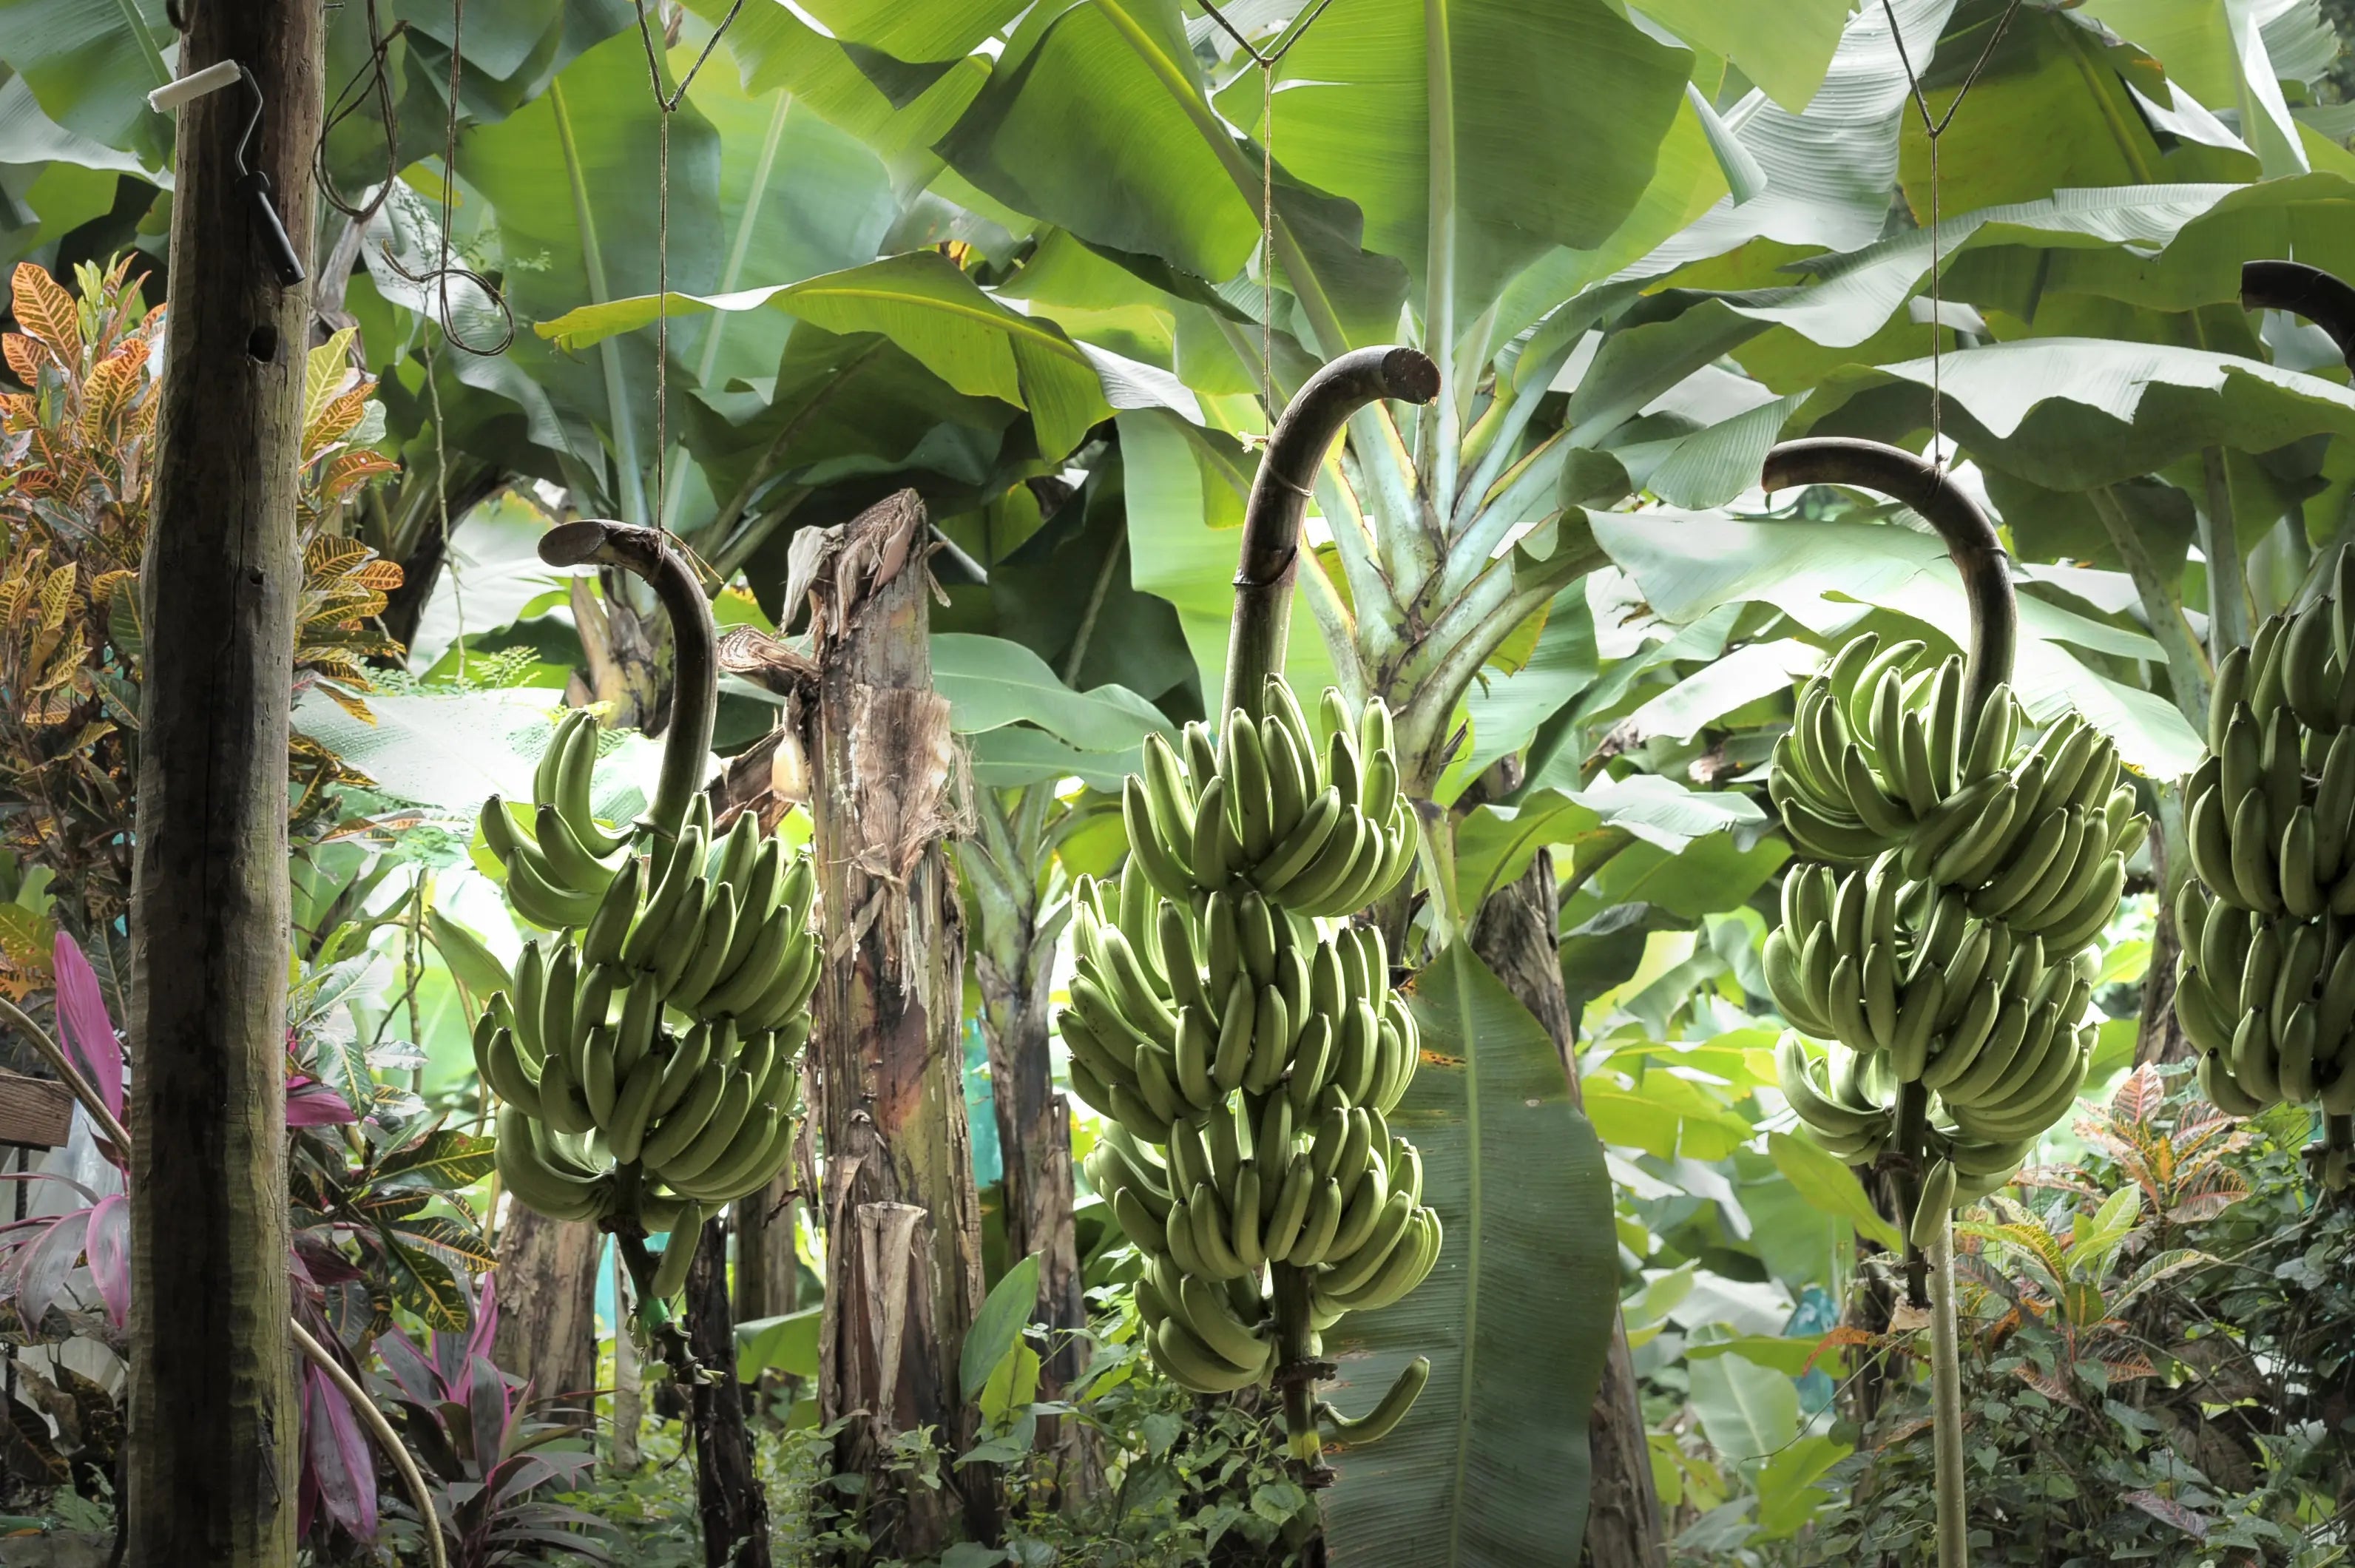 Nos bioactifs issus de l'up-cycling des bananes, une solution innovante pour réduire le gaspillage alimentaire